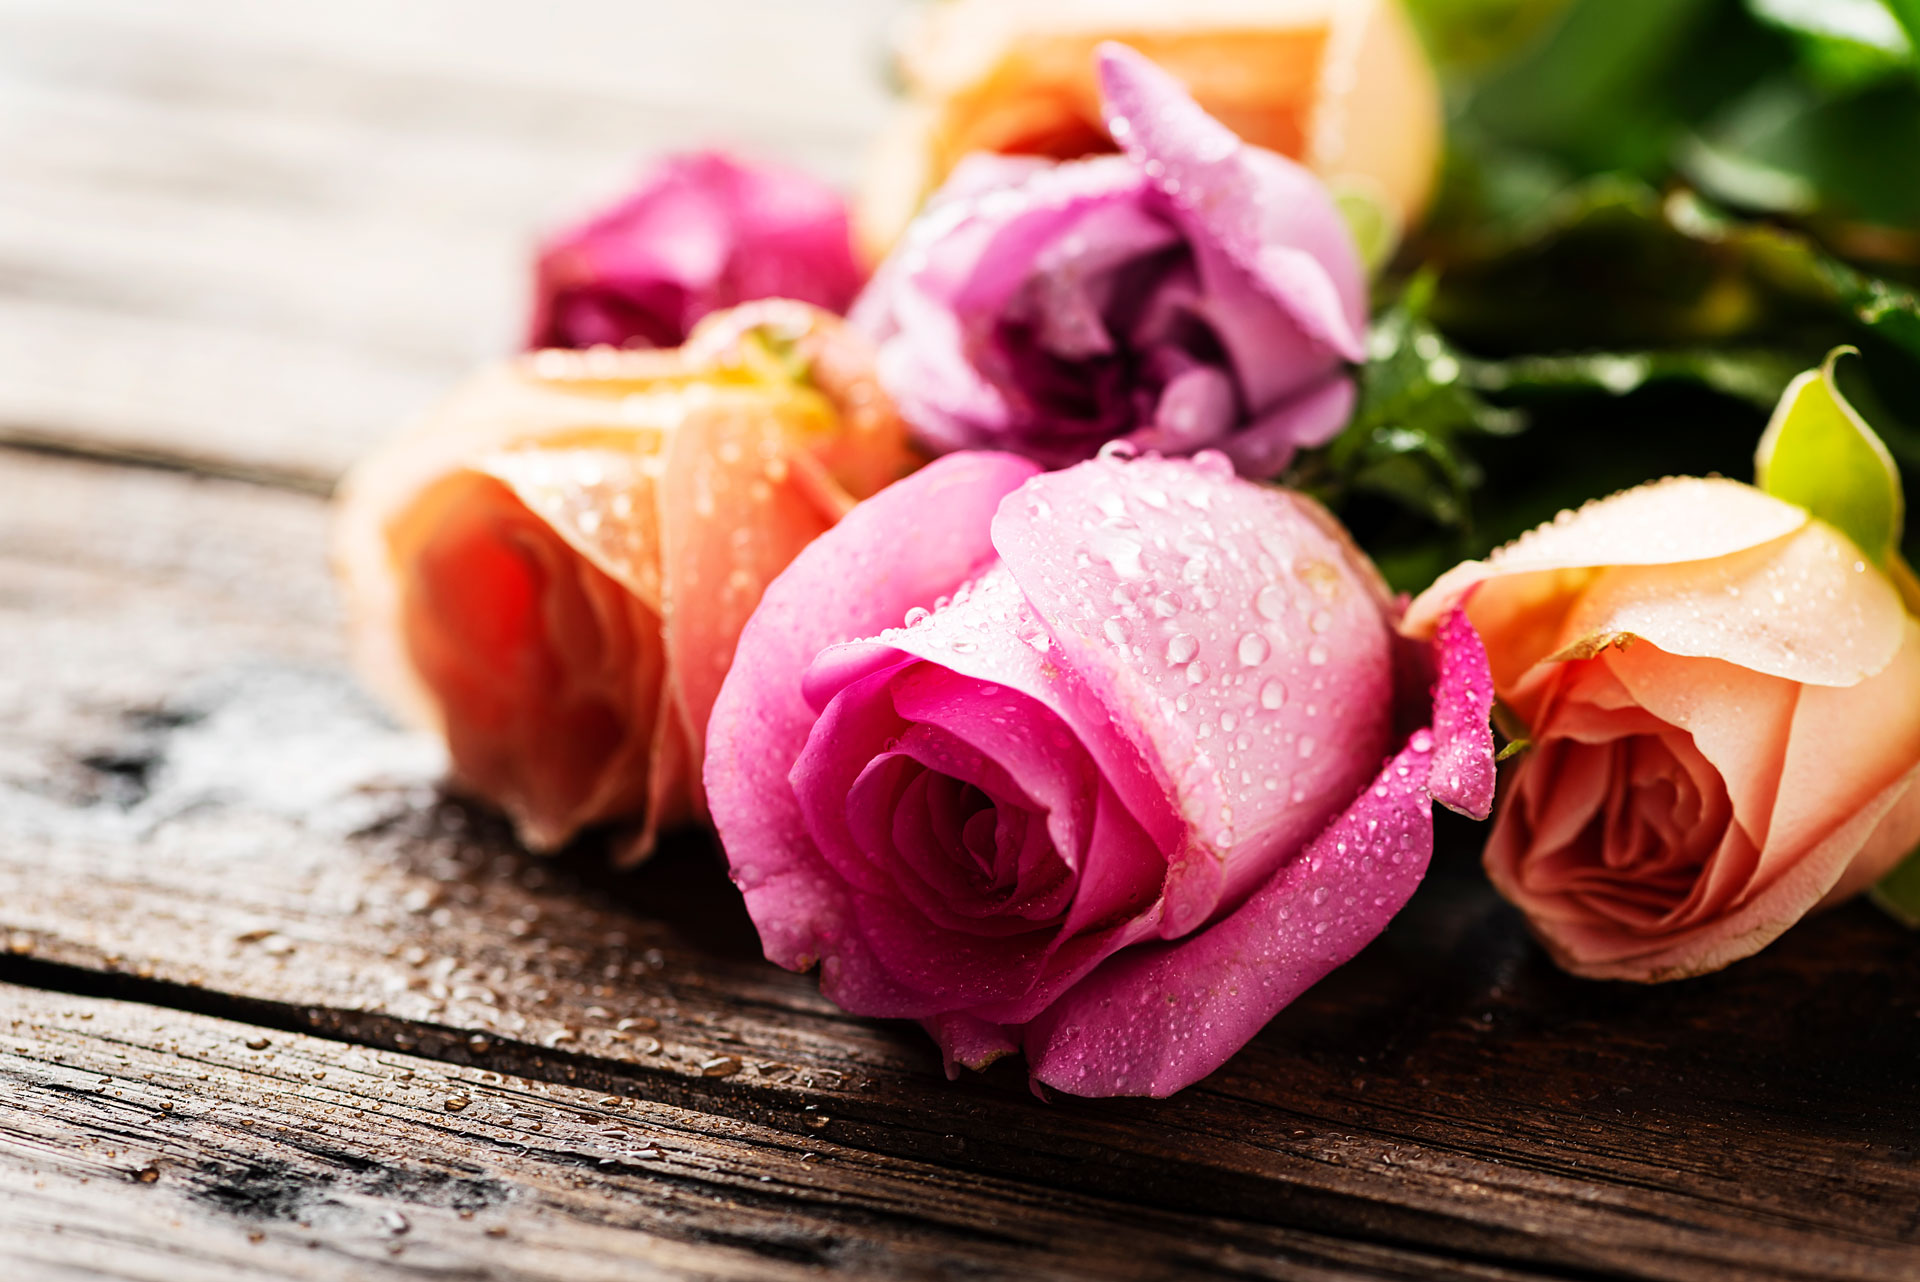 Le rose: sono eleganti e raffinate, da sempre. Ecco un particolare di rose rosa e gialle assieme.